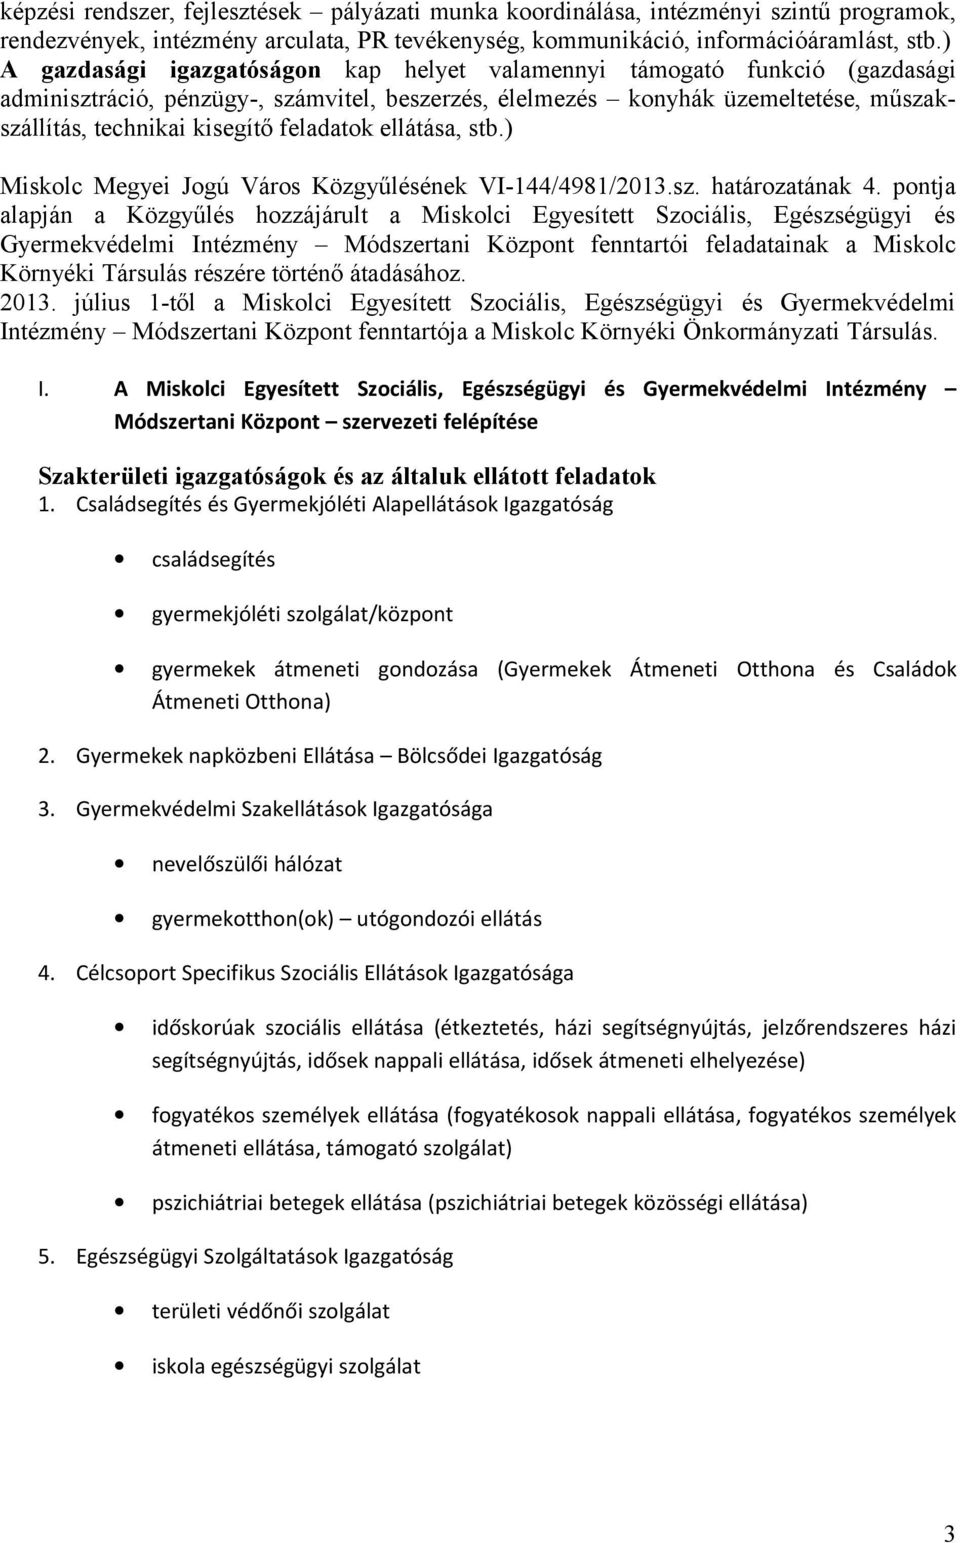 feladatok ellátása, stb.) Miskolc Megyei Jogú Város Közgyűlésének VI-144/4981/2013.sz. határozatának 4.